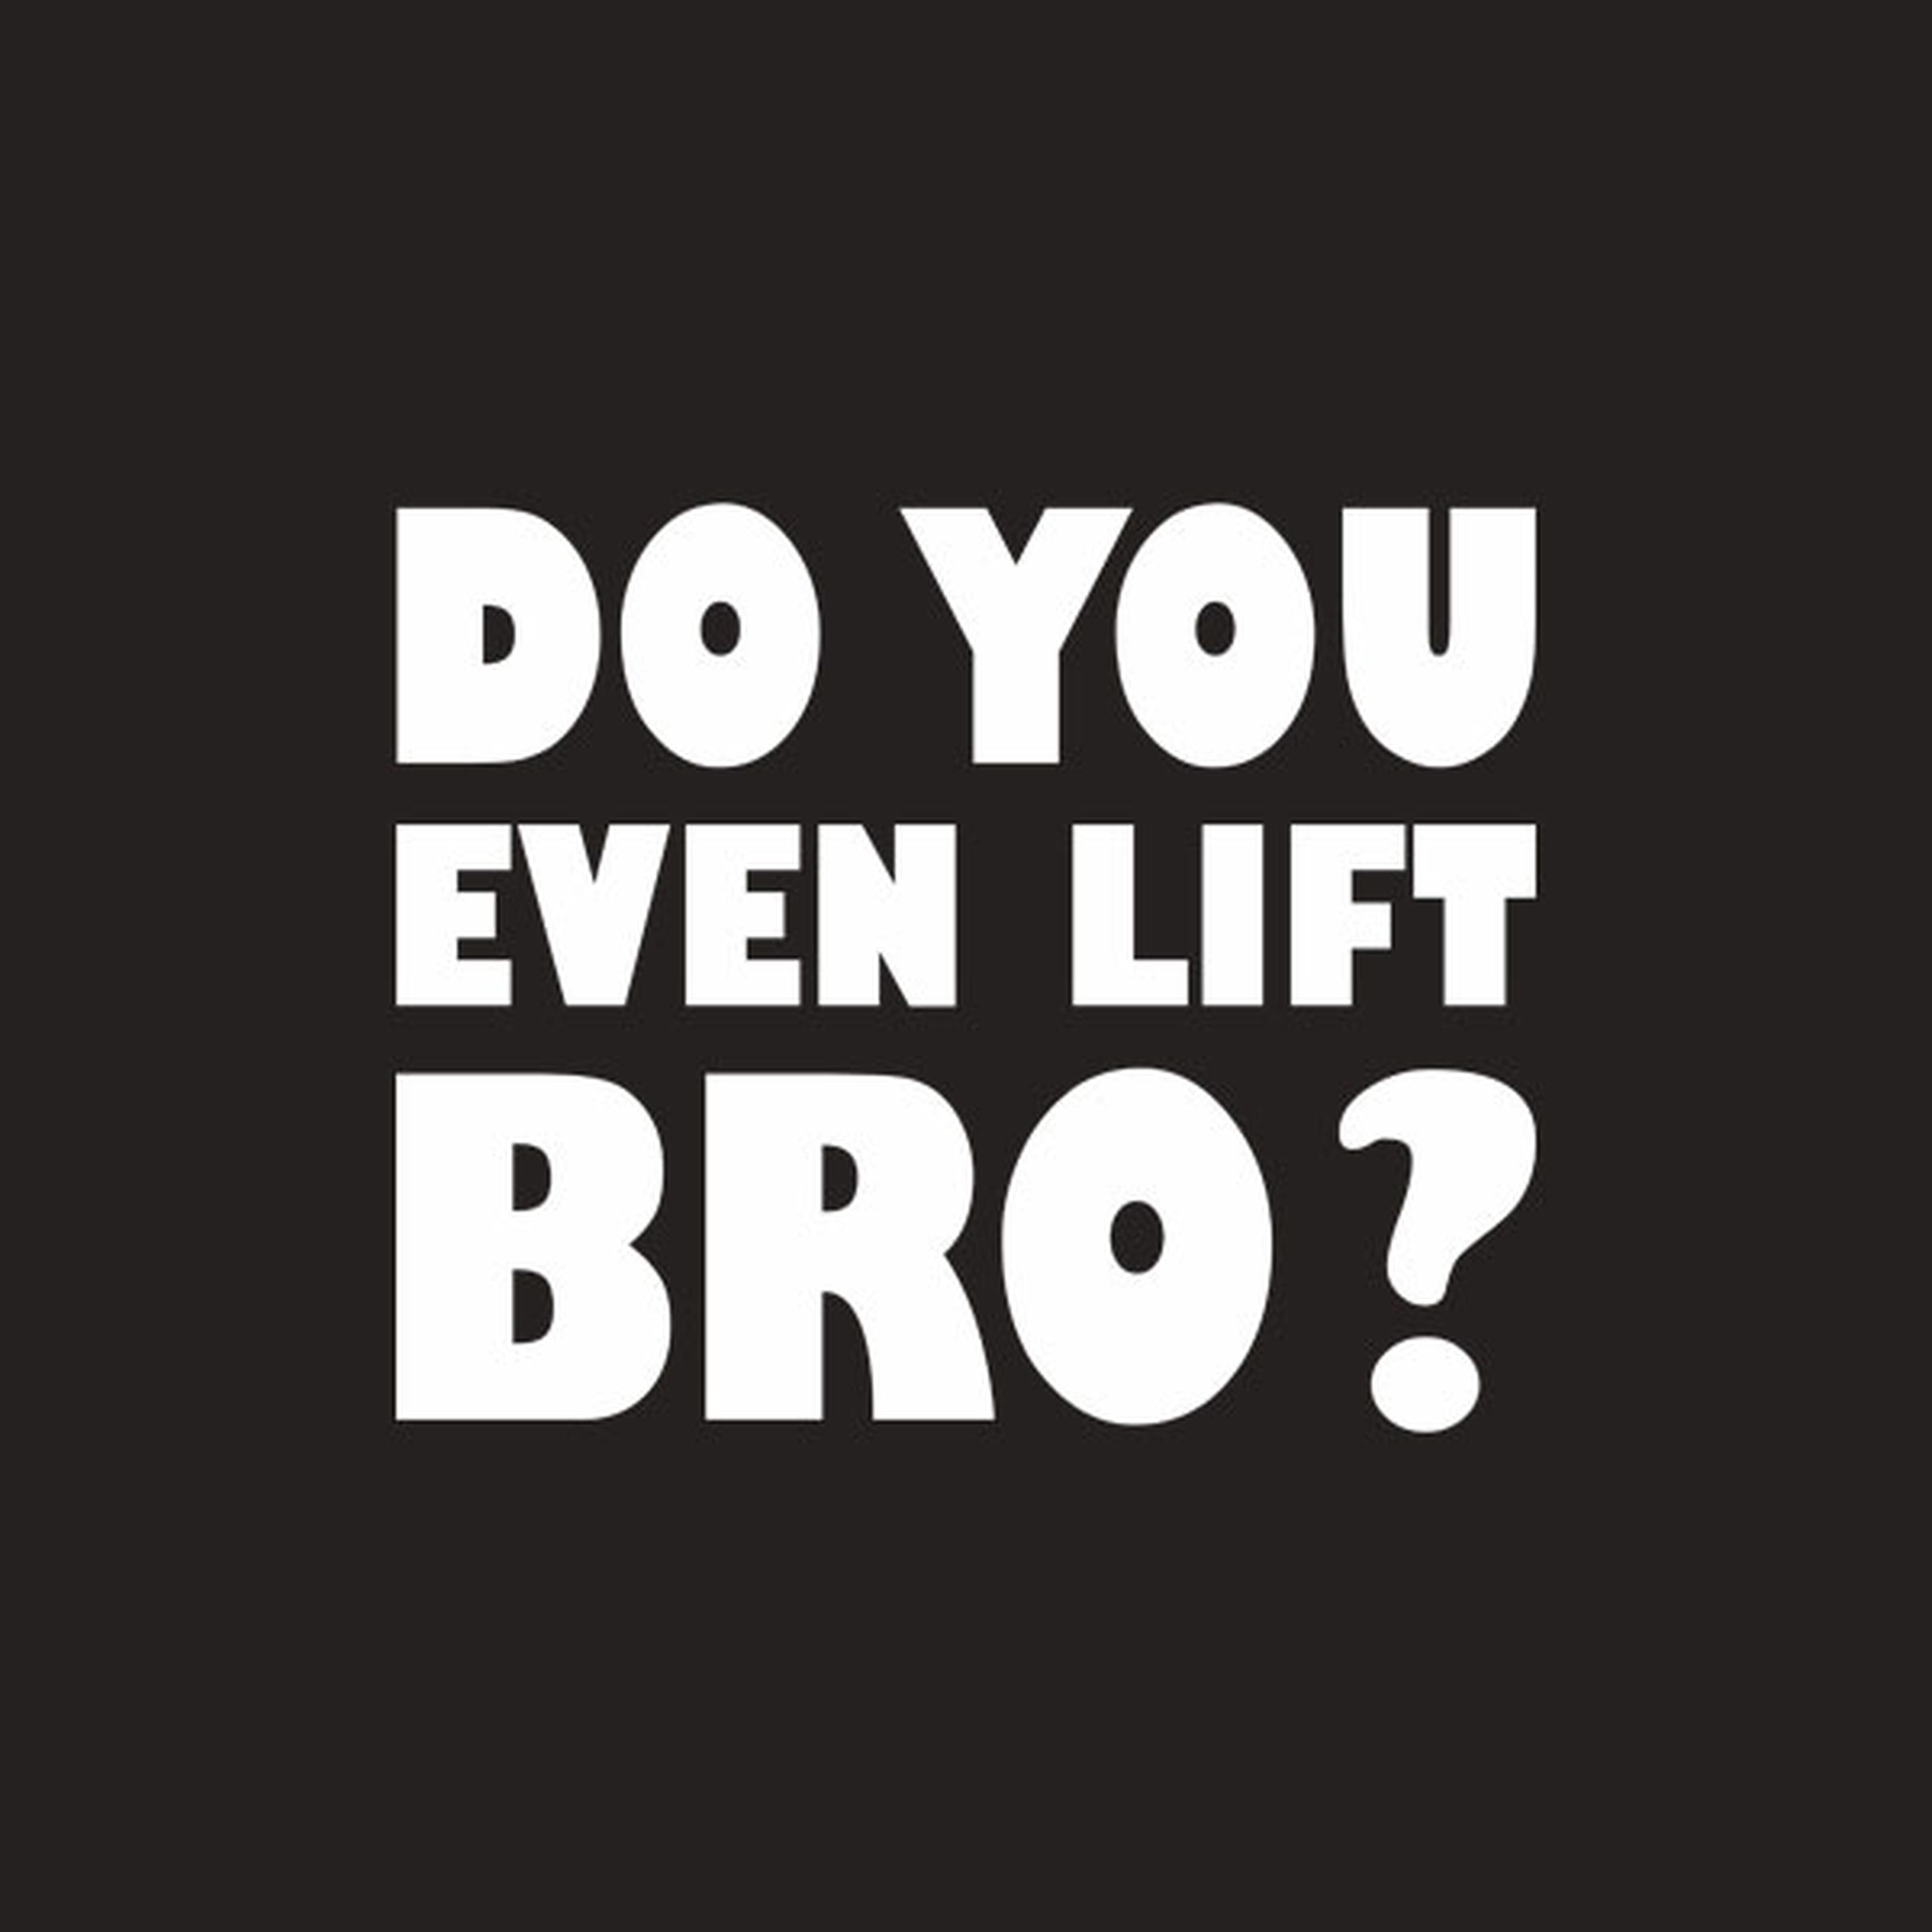 Do you even lift bro? - T-shirt